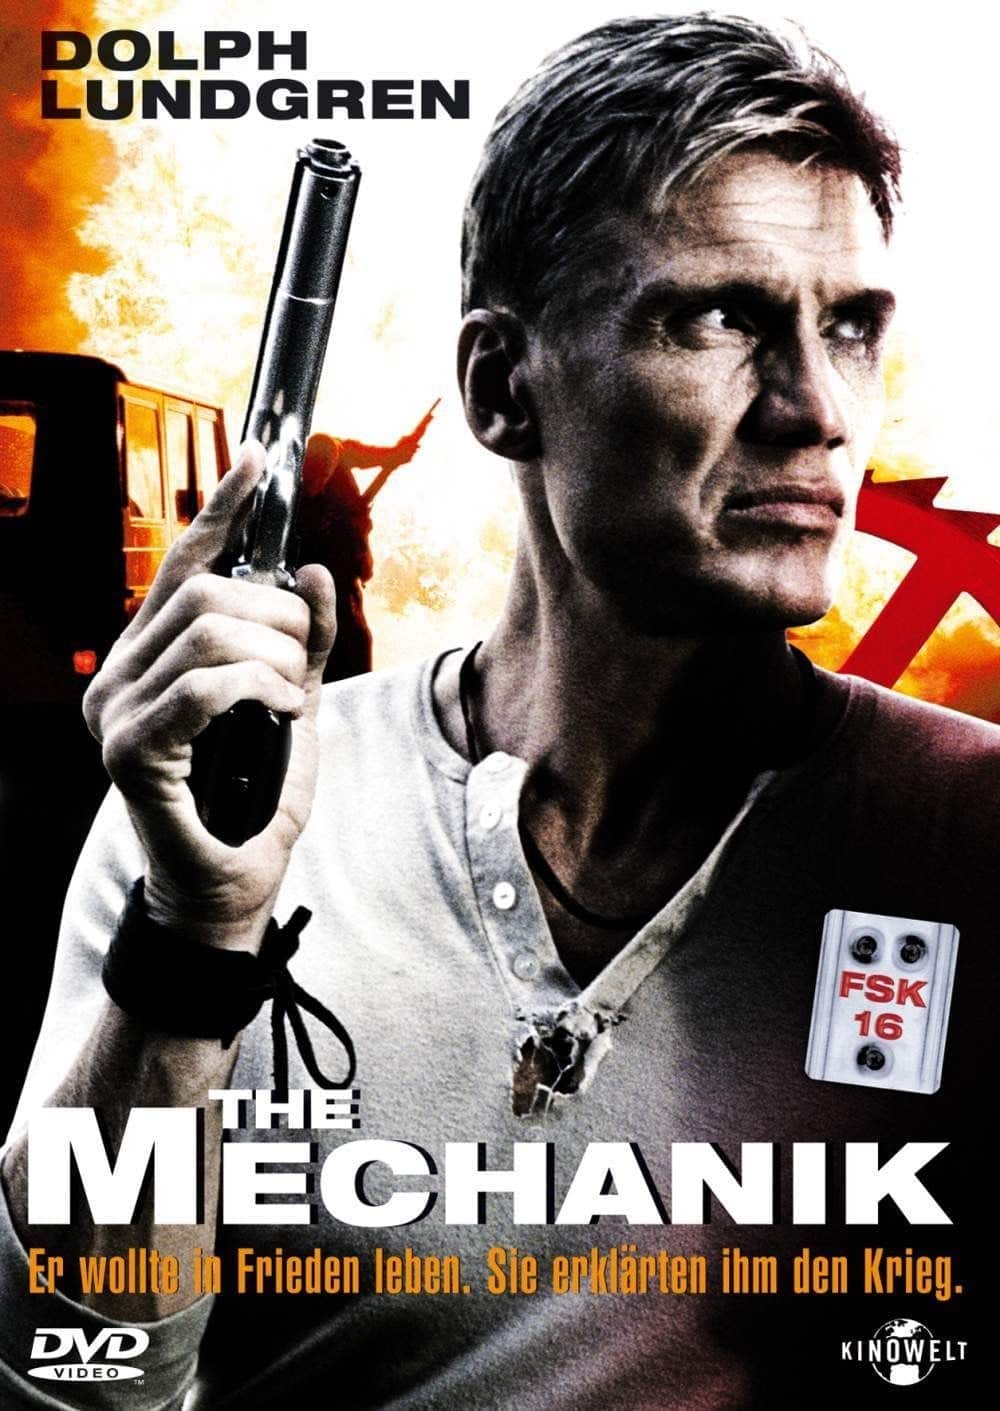 Plakat von "The Mechanik"